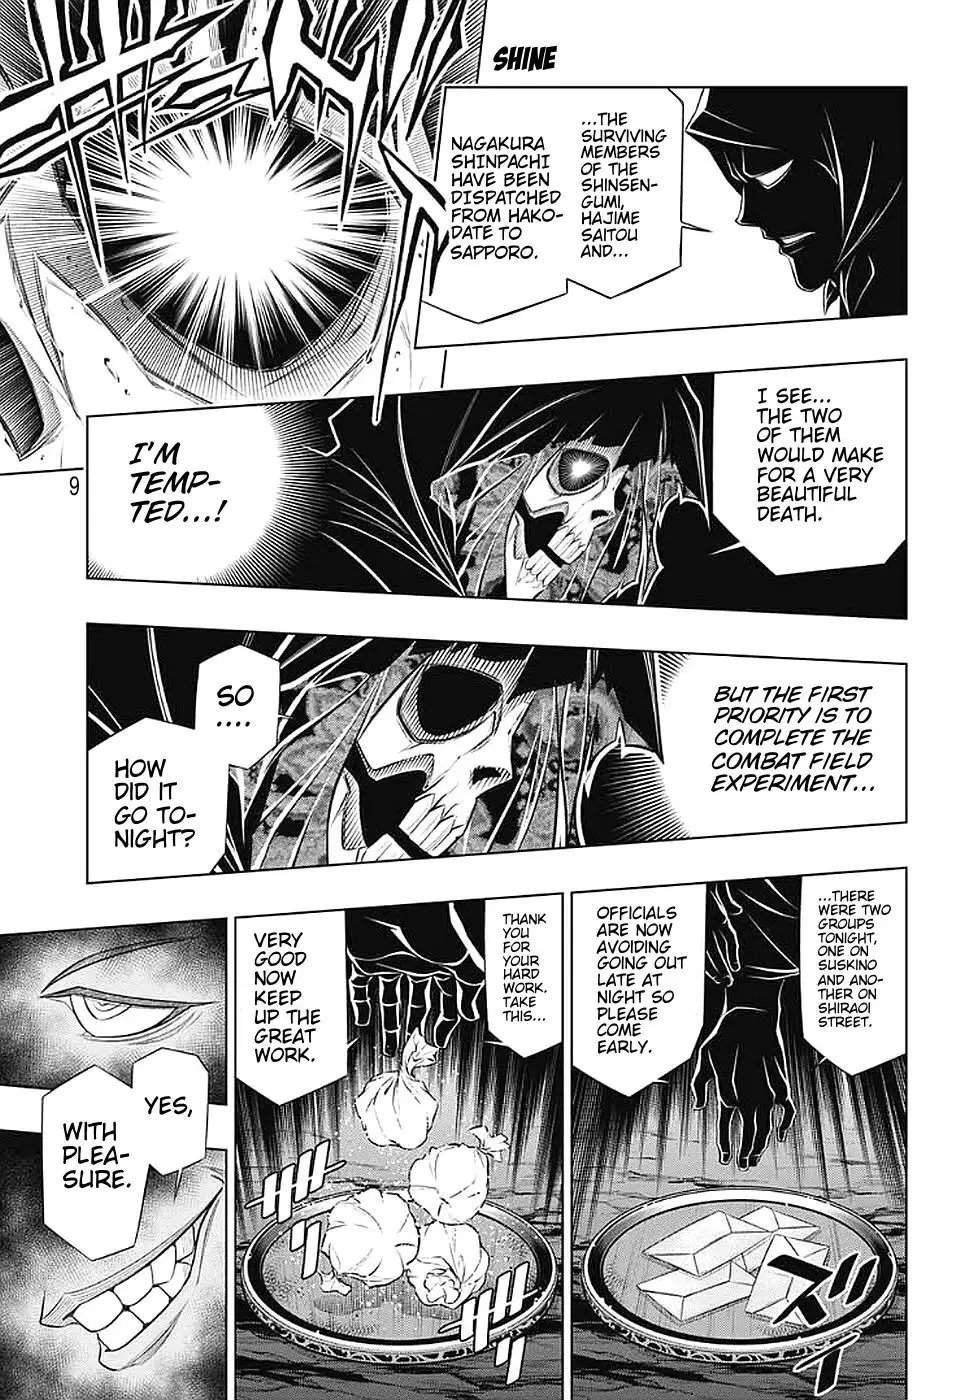 Rurouni Kenshin: Hokkaido Arc - 38 page 9